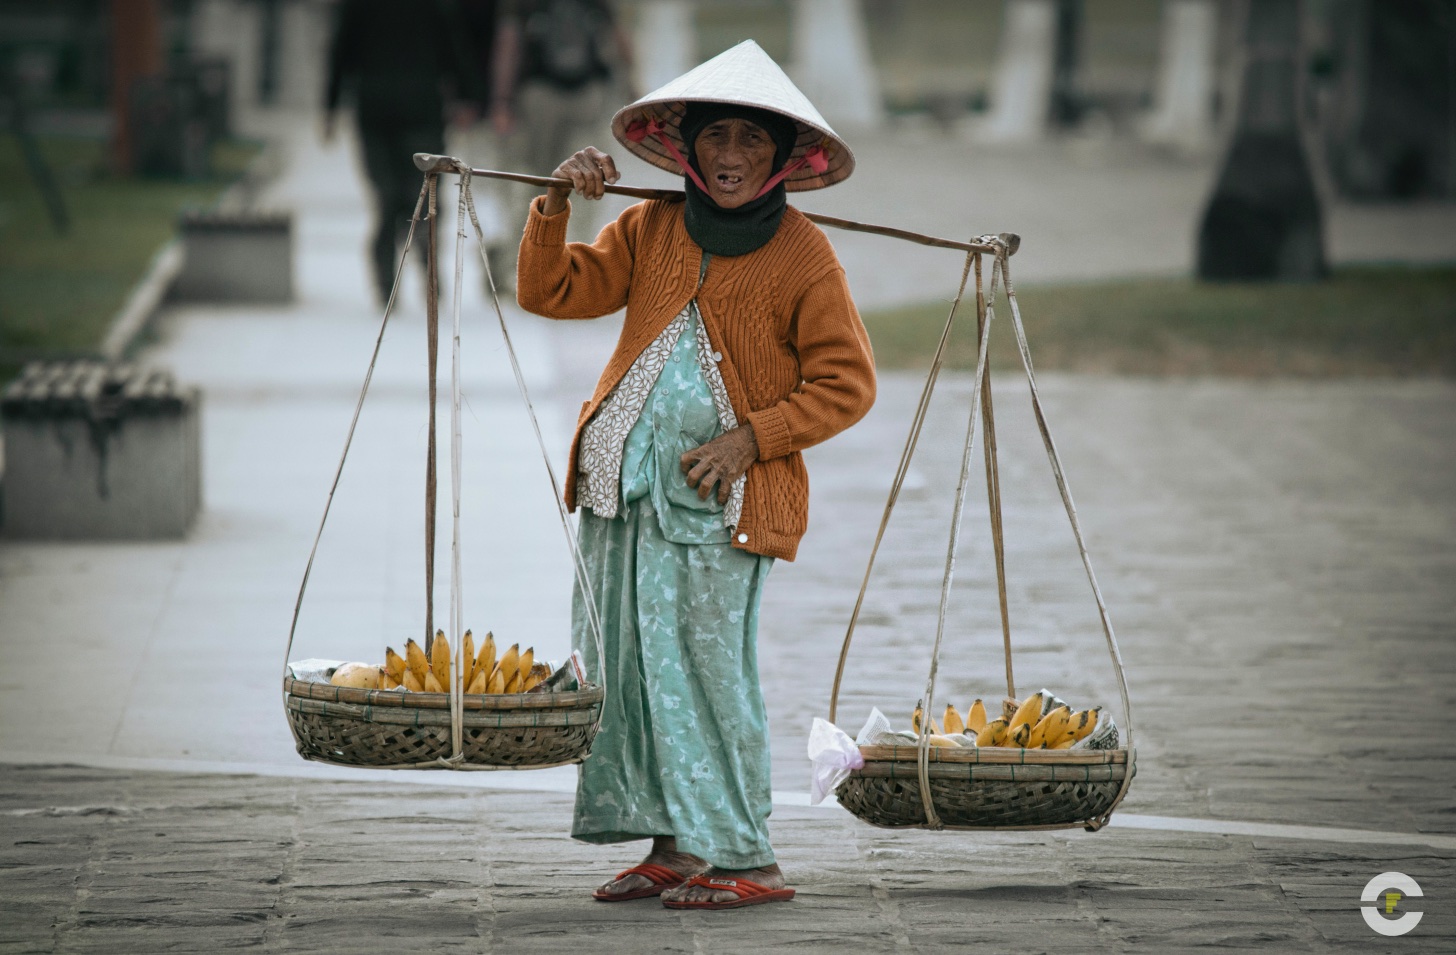 Vietnam / Hoi An / 2014